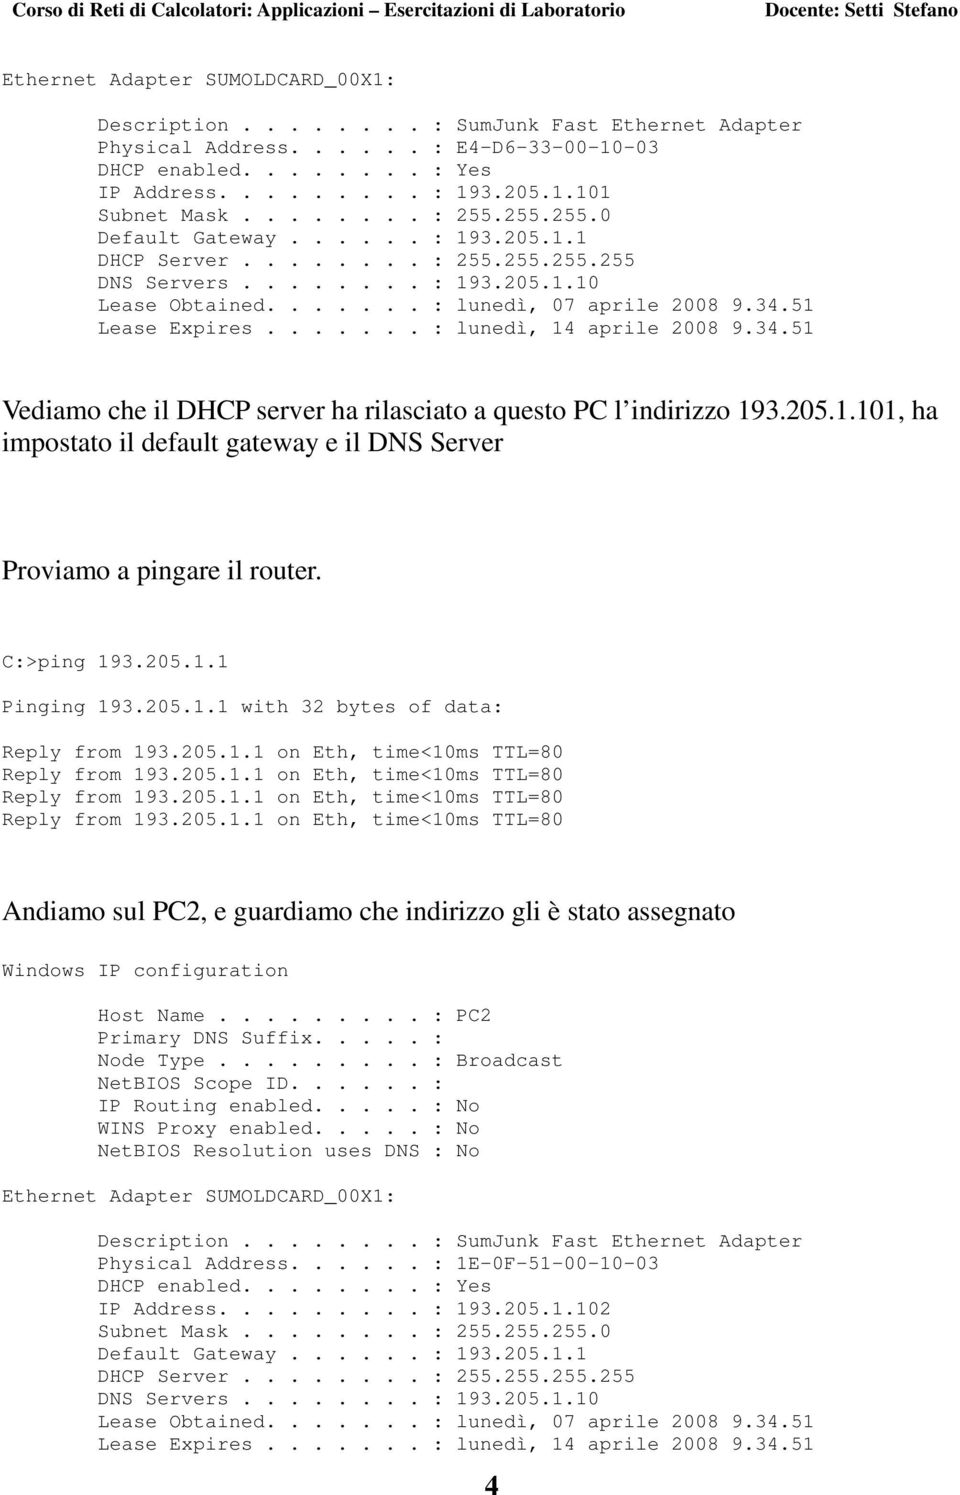 51 Lease Expires....... : lunedì, 14 aprile 2008 9.34.51 Vediamo che il DHCP server ha rilasciato a questo PC l indirizzo 193.205.1.101, ha impostato il default gateway e il DNS Server Proviamo a pingare il router.